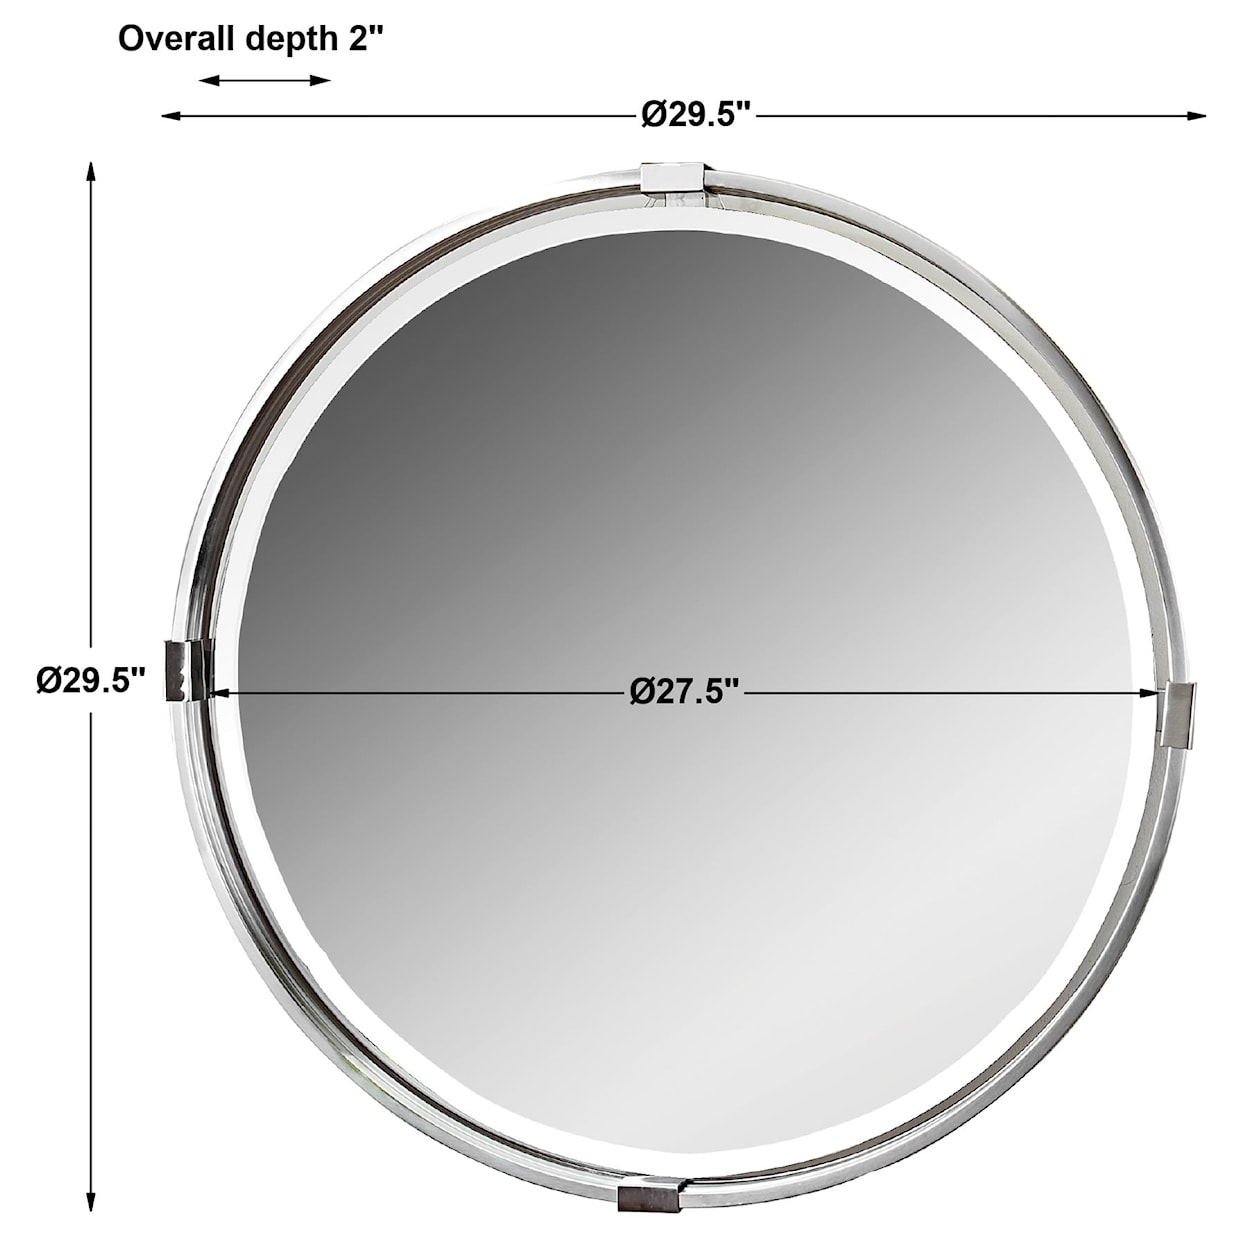 Uttermost Mirrors - Round Tazlina Brushed Nickel Round Mirror